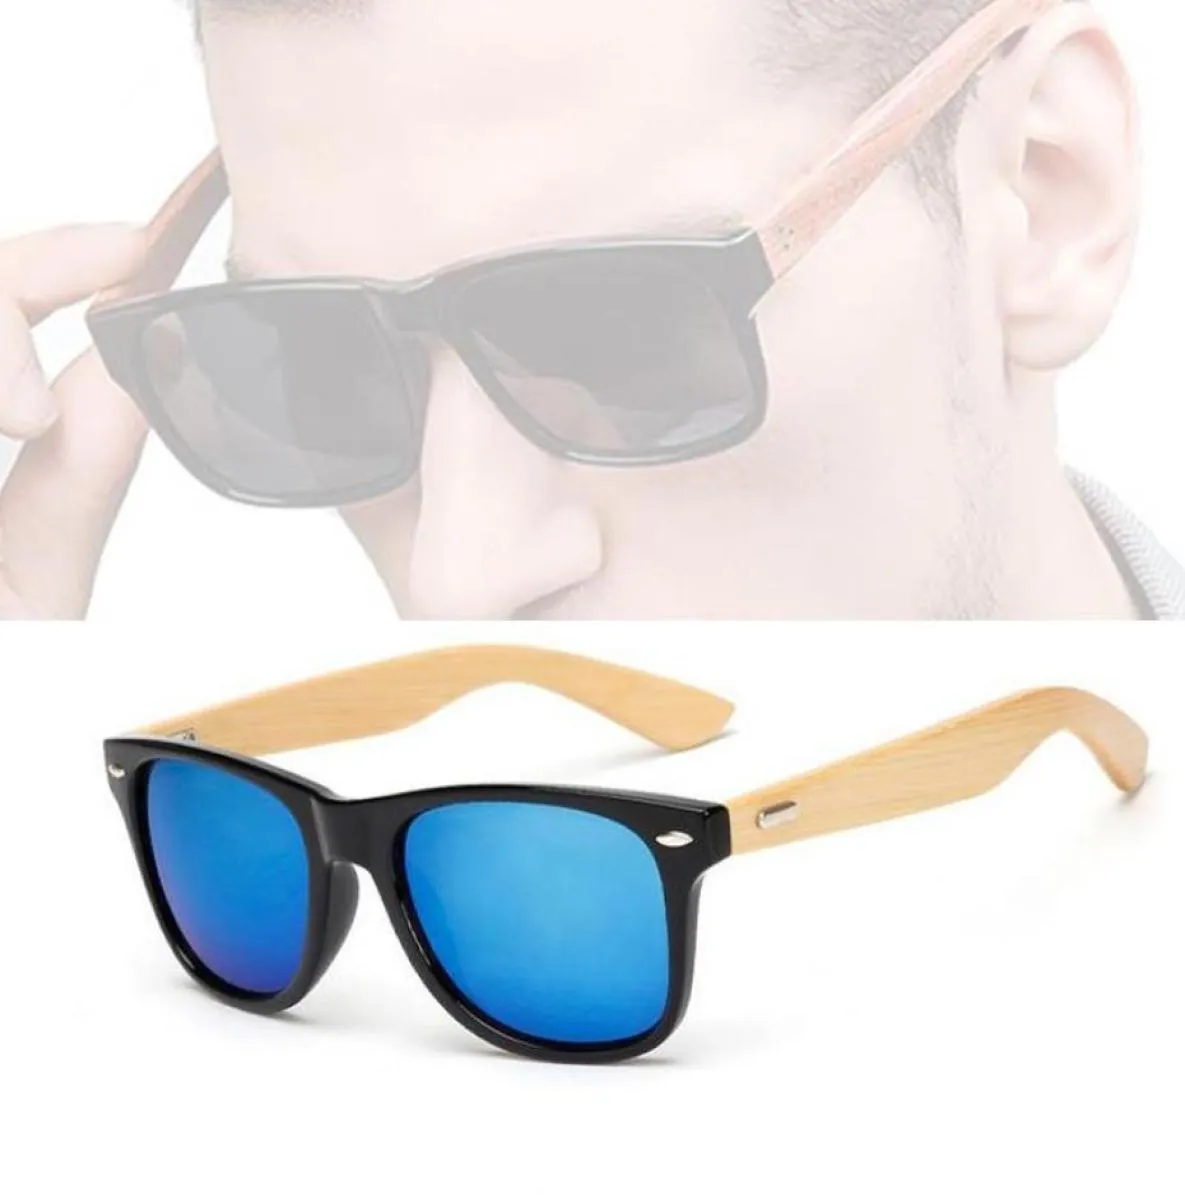 Sunglasses Bamboo Women Men Wooden Leg For Male Female Vintage Travel Goggles Sun Glasses Eyeglasses4059930